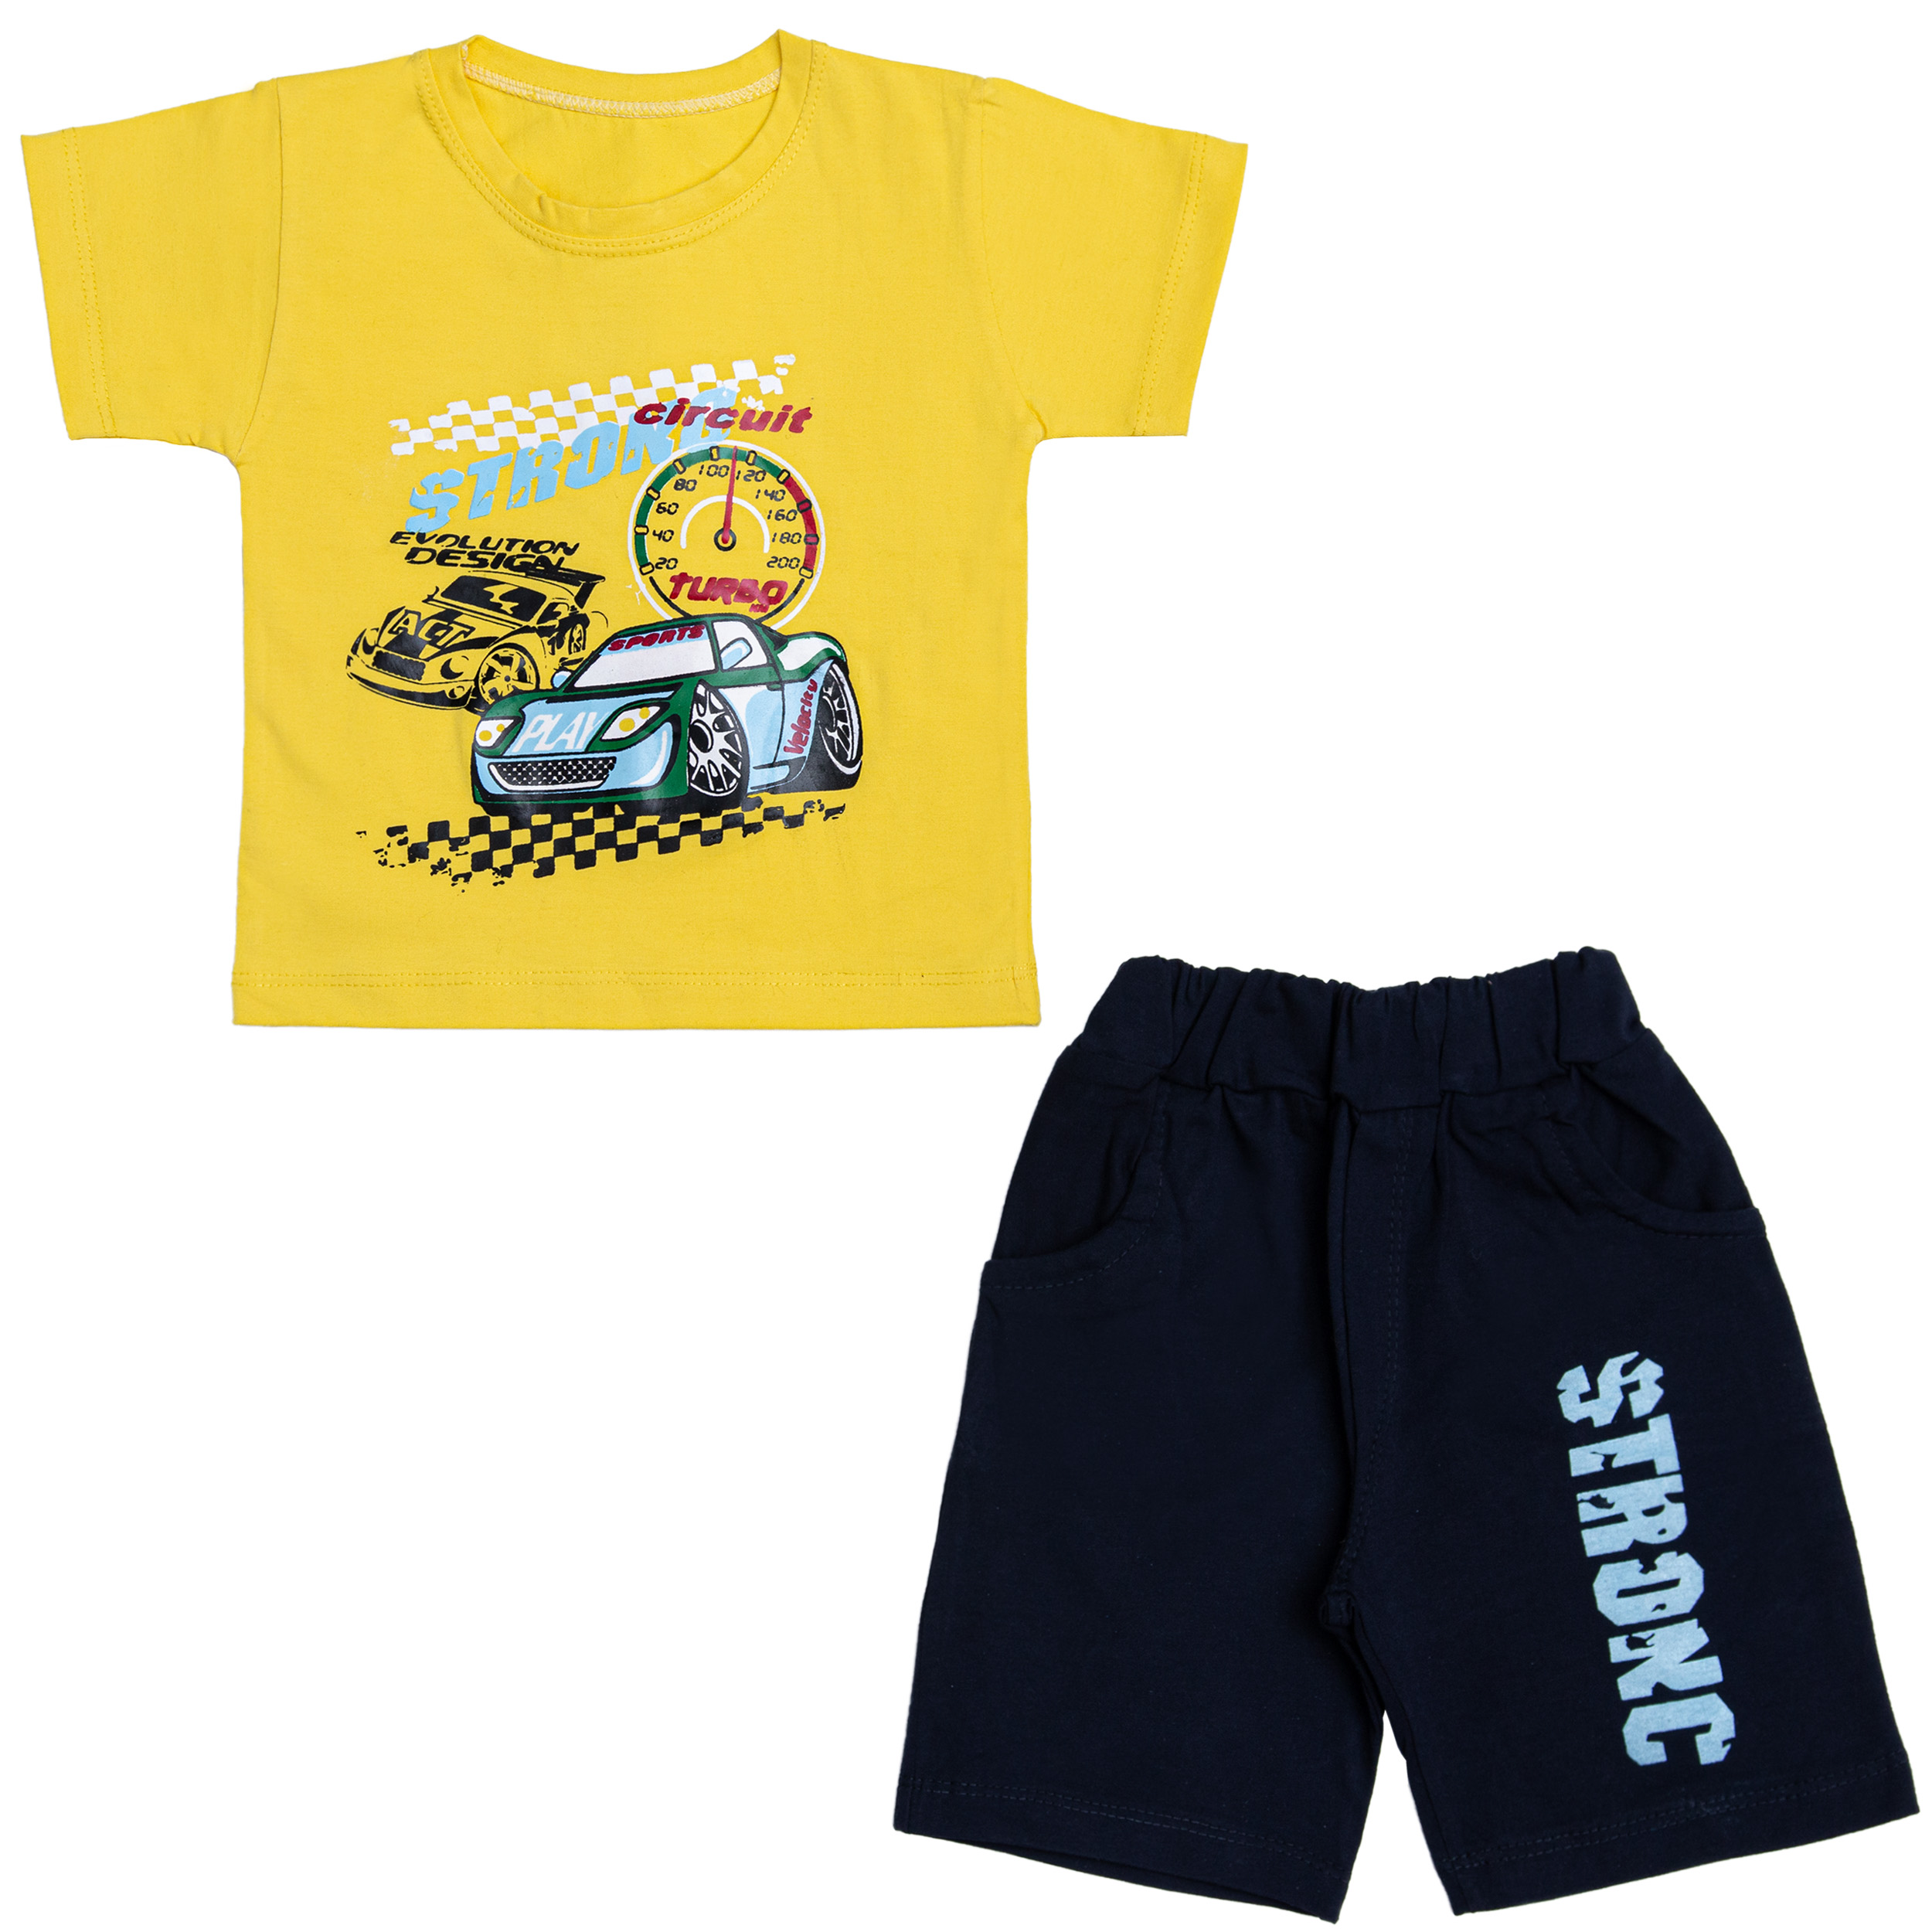 ست تی شرت و شلوارک پسرانه مدل ماشین مسابقه ای کد 112 رنگ زرد